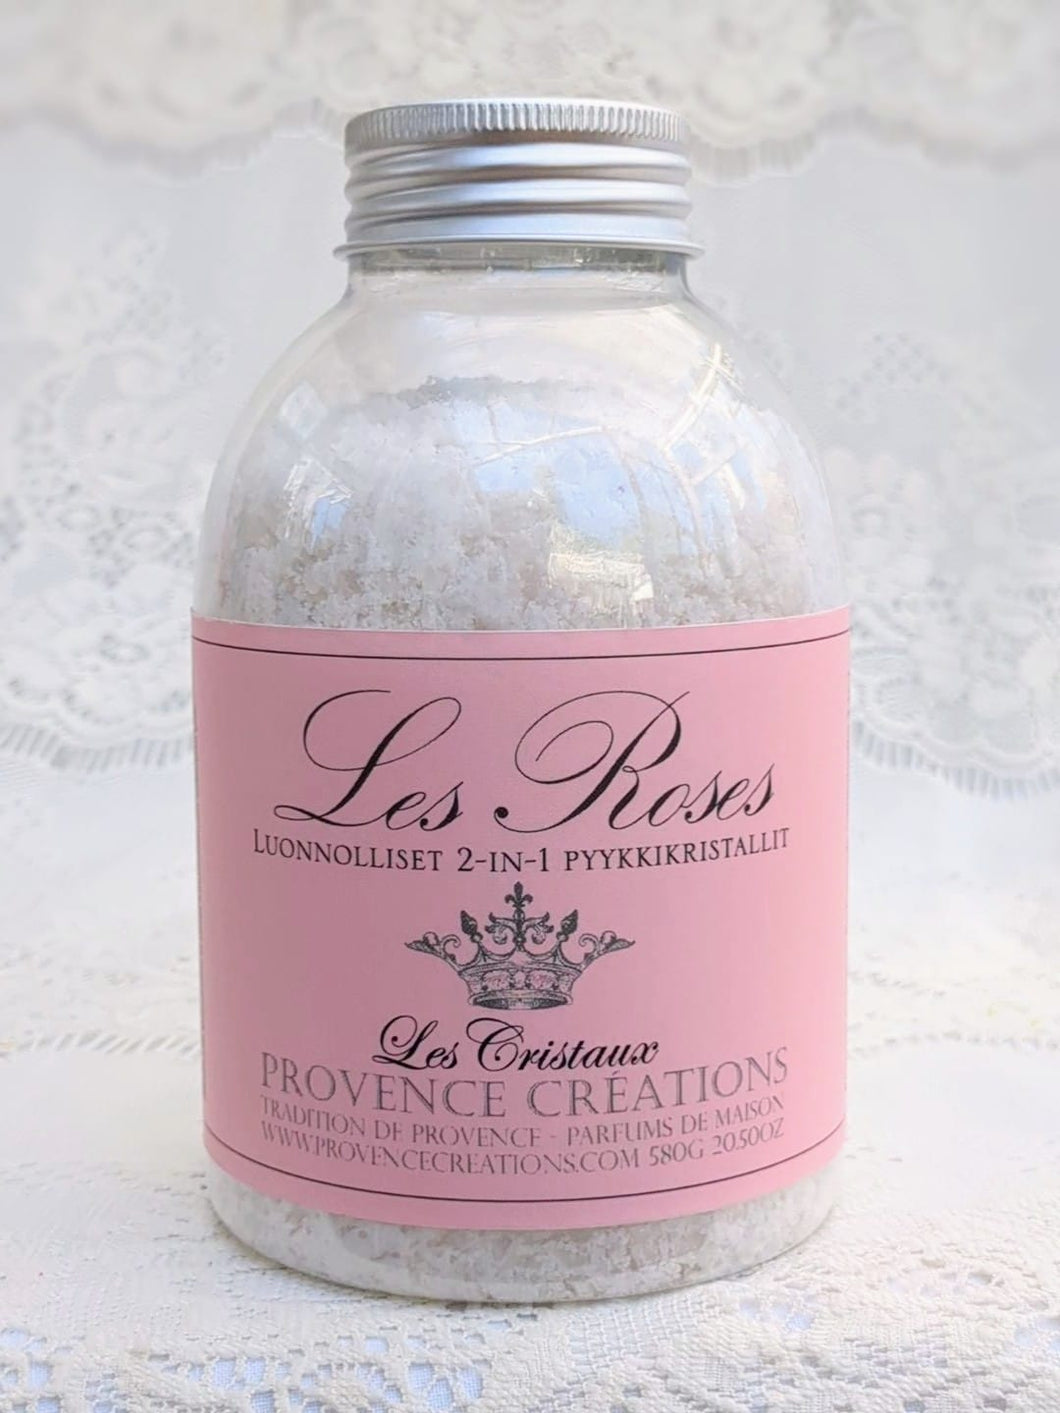 Pyykkikristallit, Les Roses, ruusut, Provence Créations, 580g Allergeeniton tuoksu